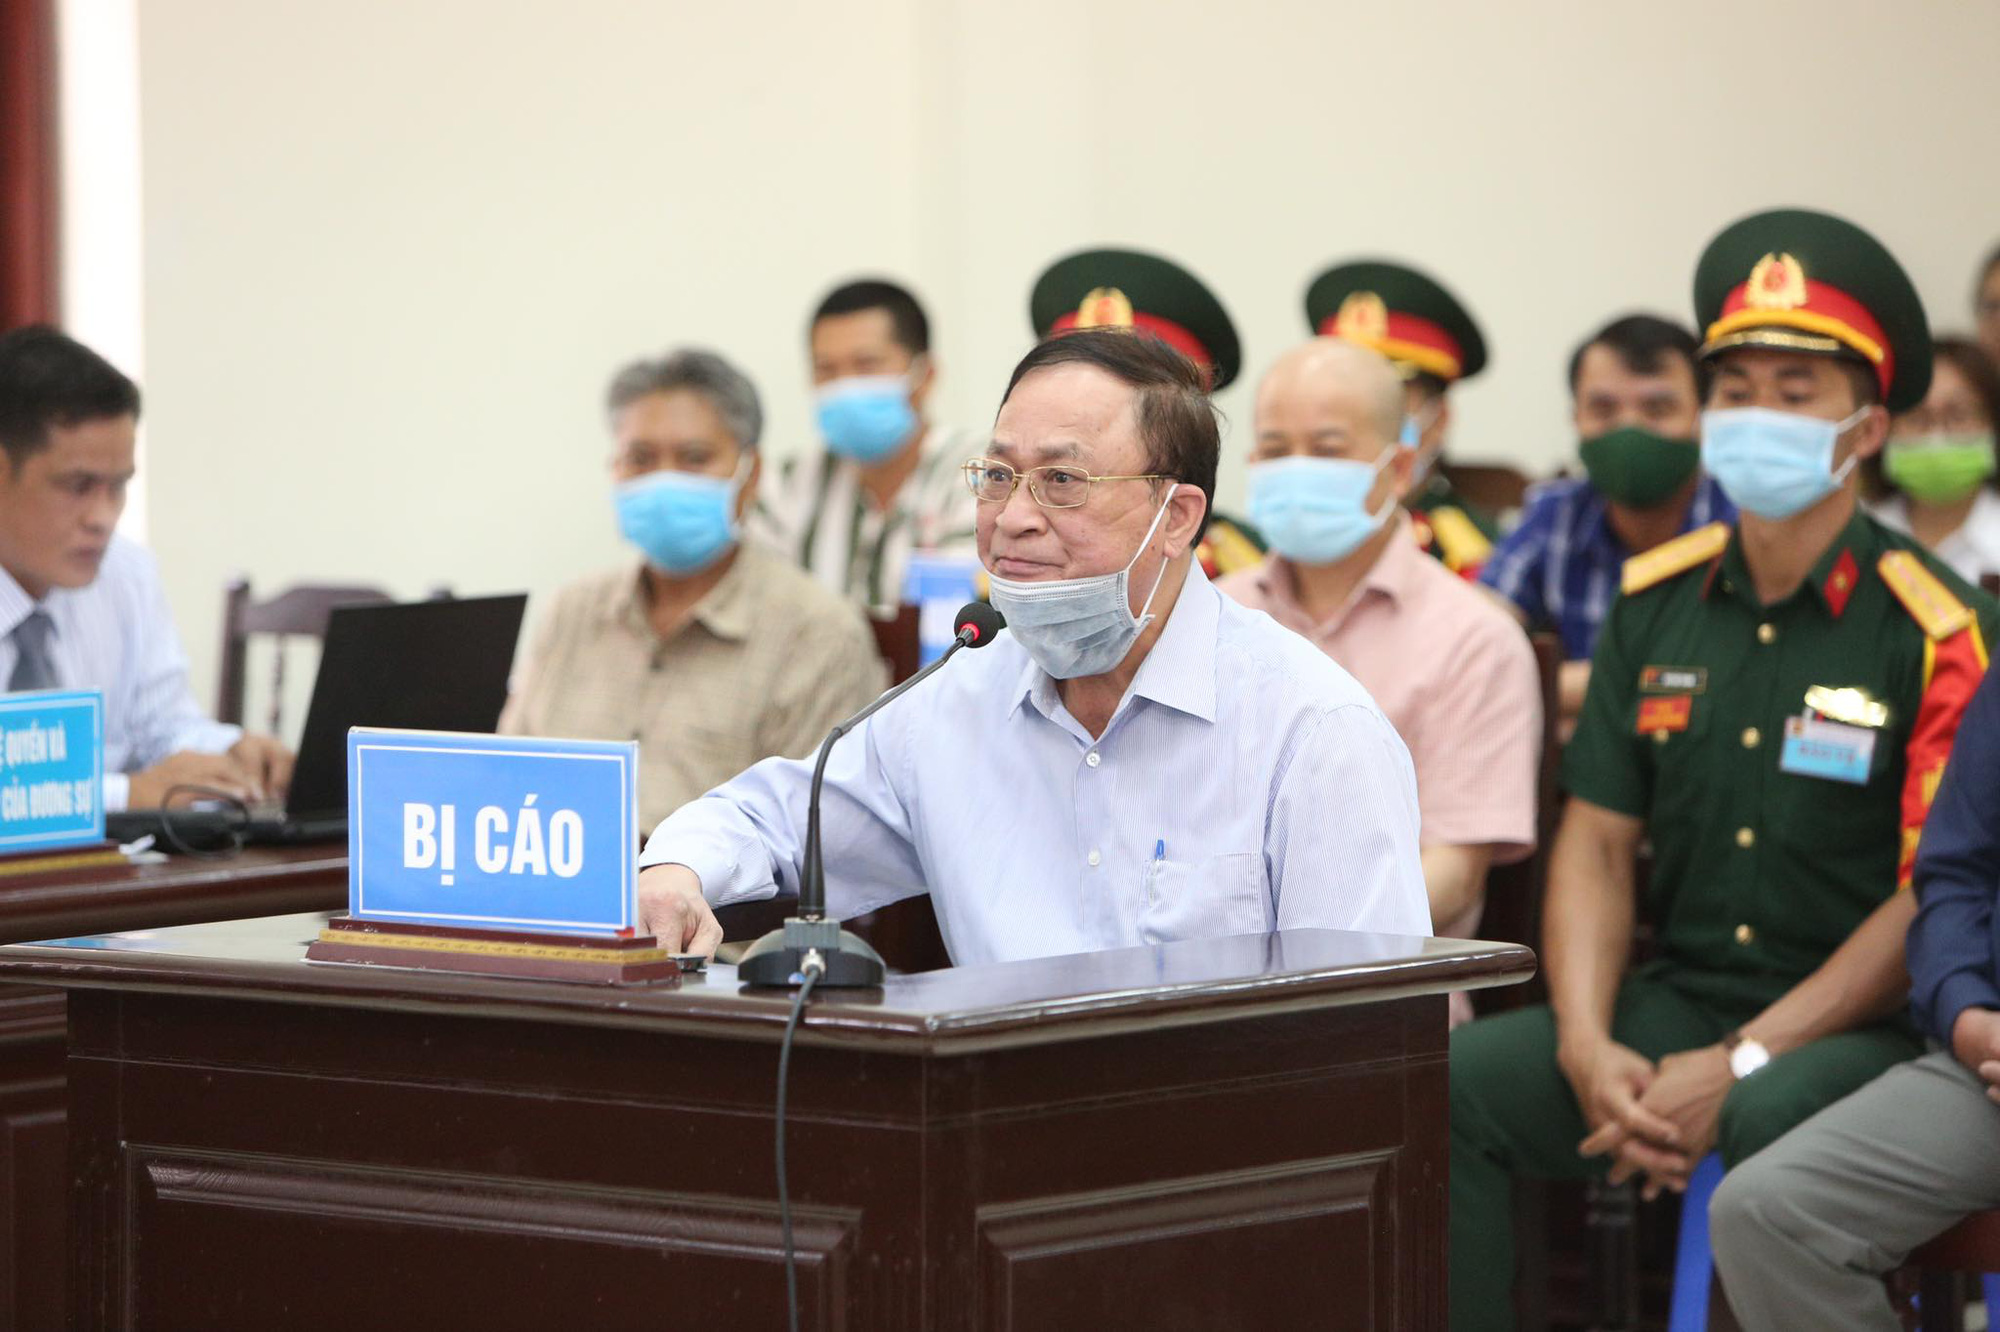 Cựu Thứ trưởng Bộ Quốc phòng Nguyễn Văn Hiến sức khỏe yếu được ngồi khai báo - Ảnh 1.